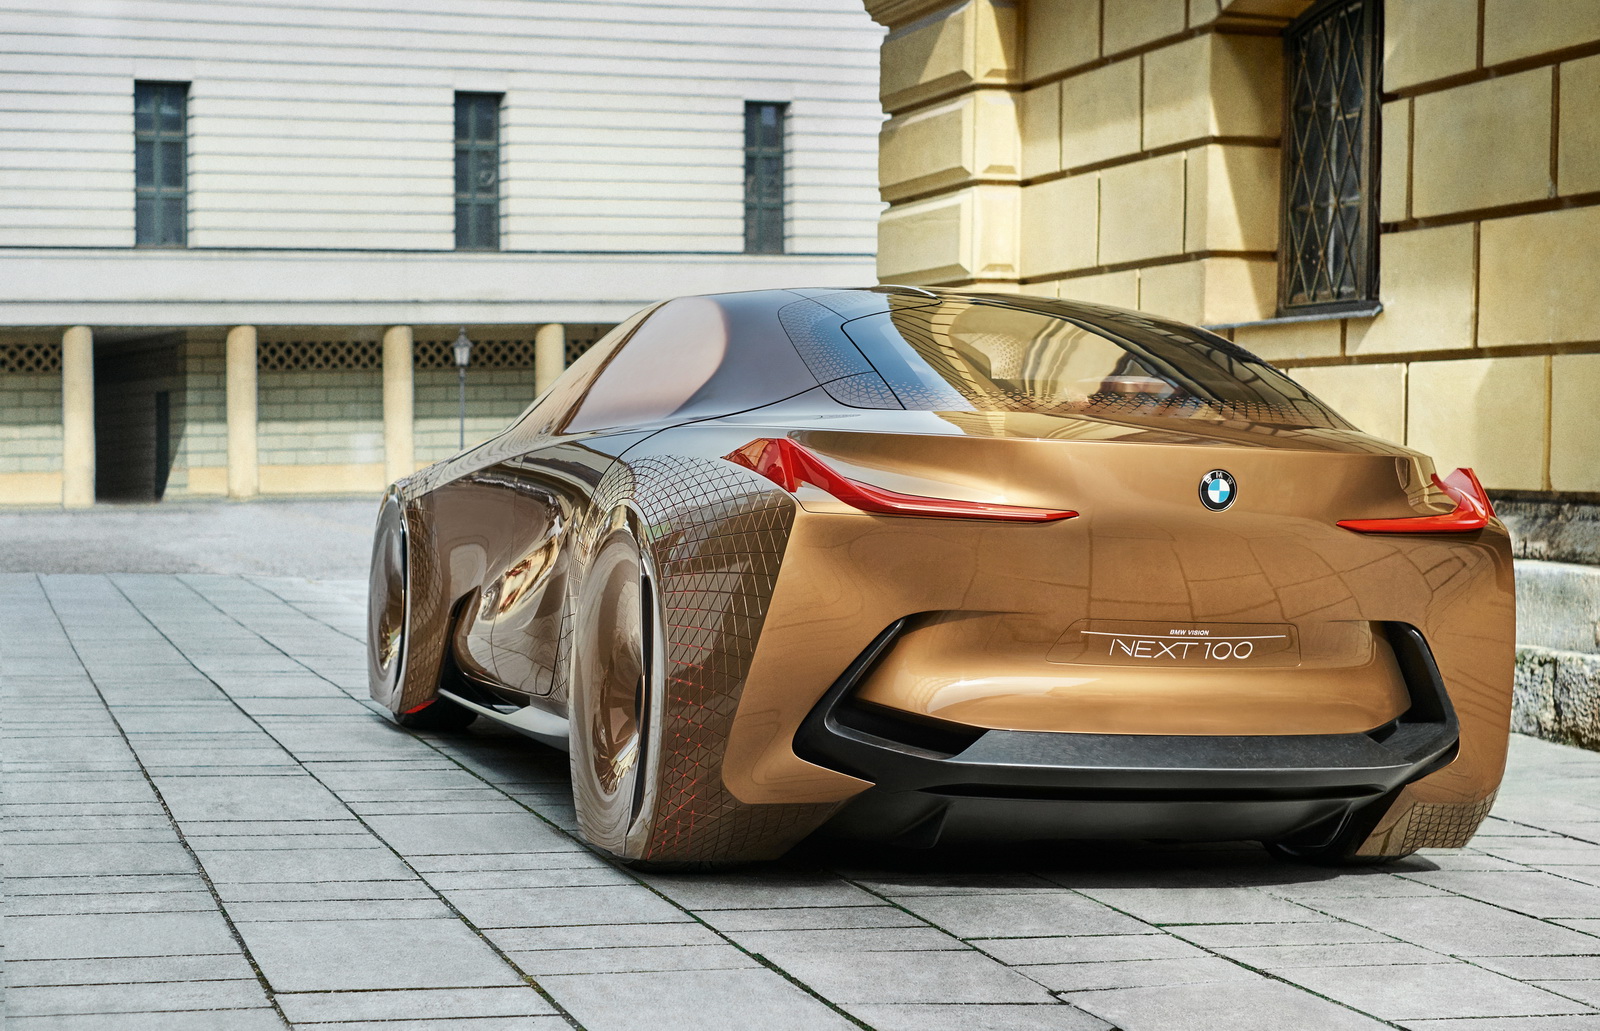 
BMW Vision Next 100 lần đầu tiên ra mắt vào hồi tháng 3/2016 vừa qua. Cái tên của mẫu xe concept mới ám chỉ tầm nhìn của hãng BMW trong một thế kỷ tới. 
